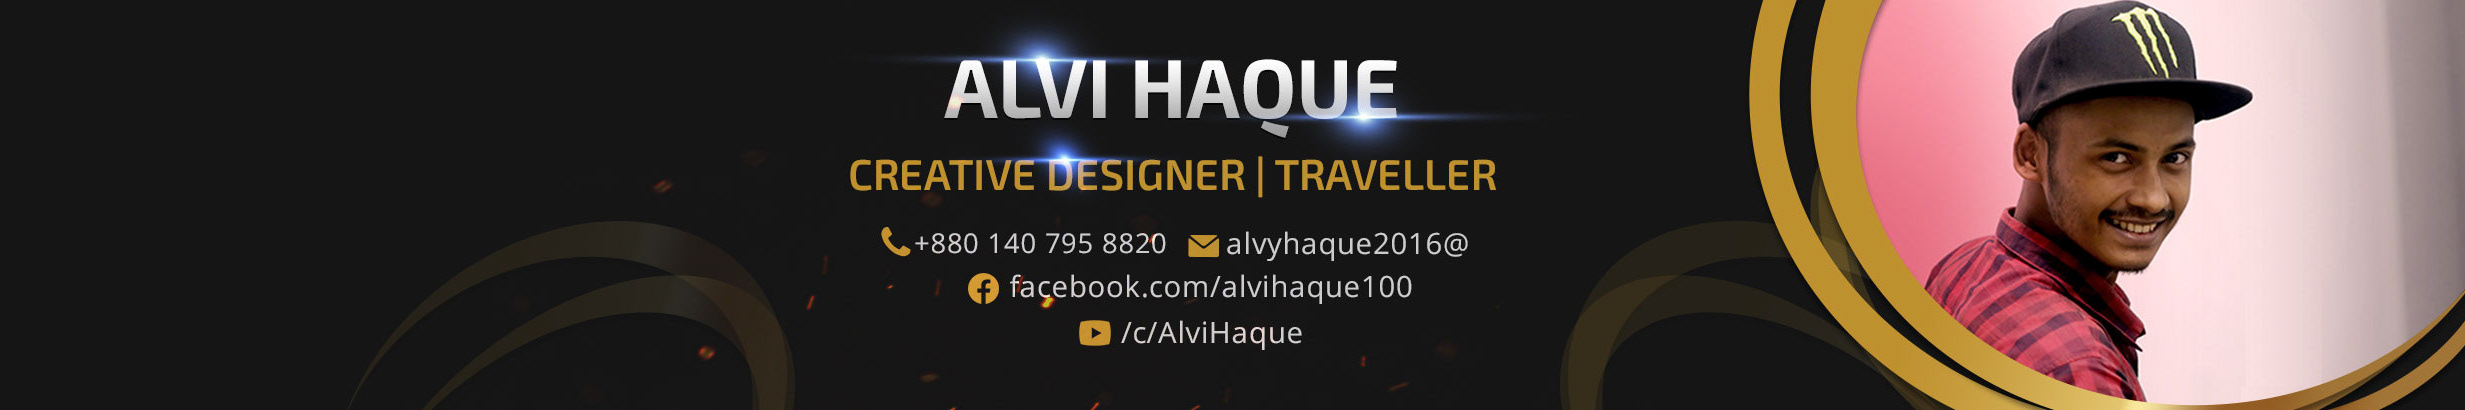 Alvi Haque's profile banner